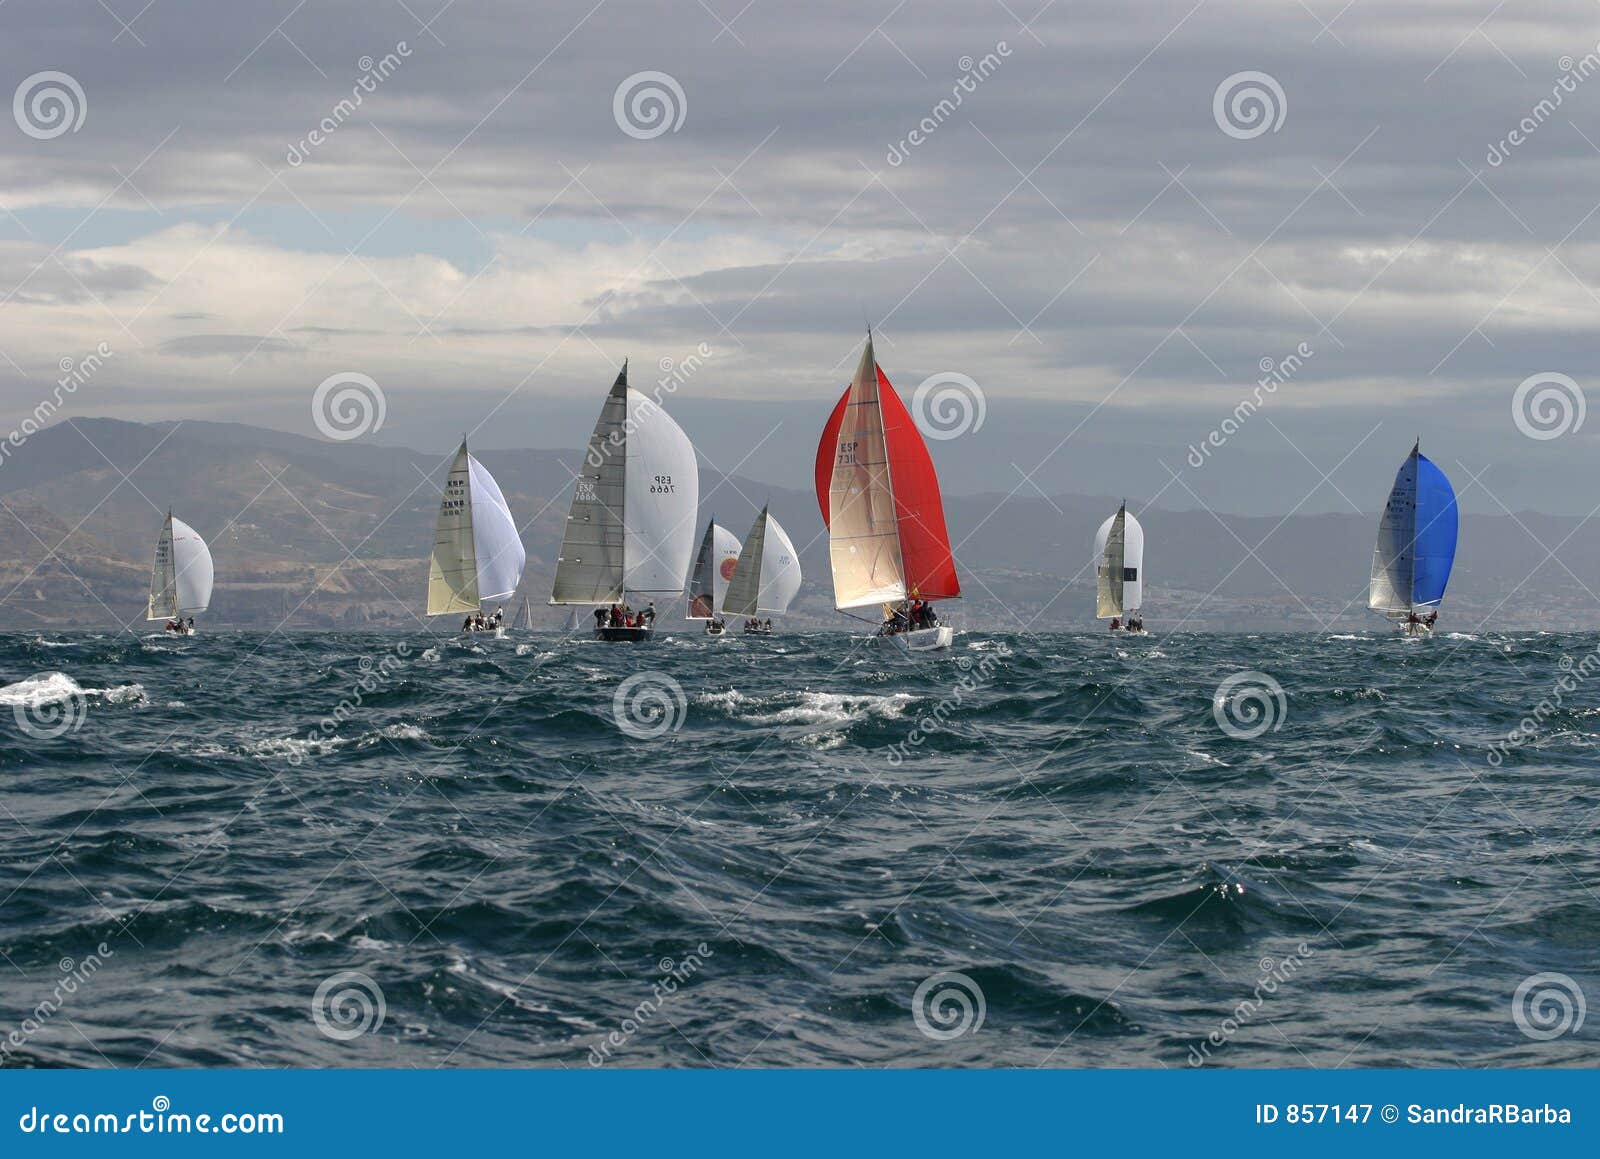 sailing, yachting #3